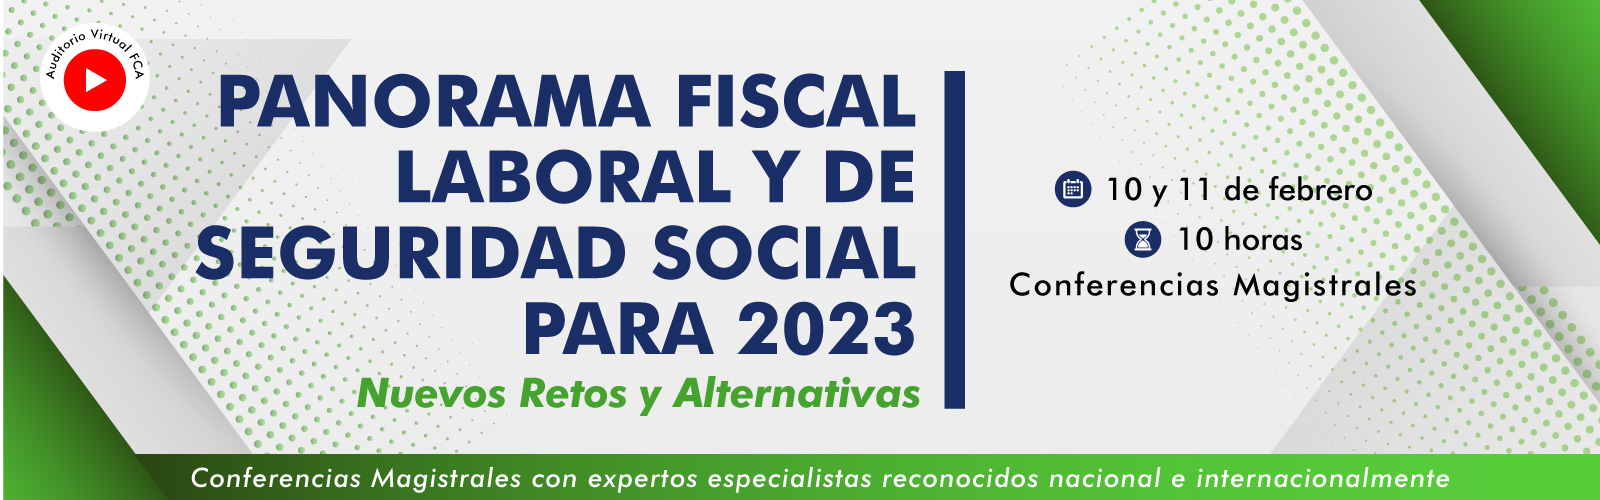 reformas-fiscales-2023